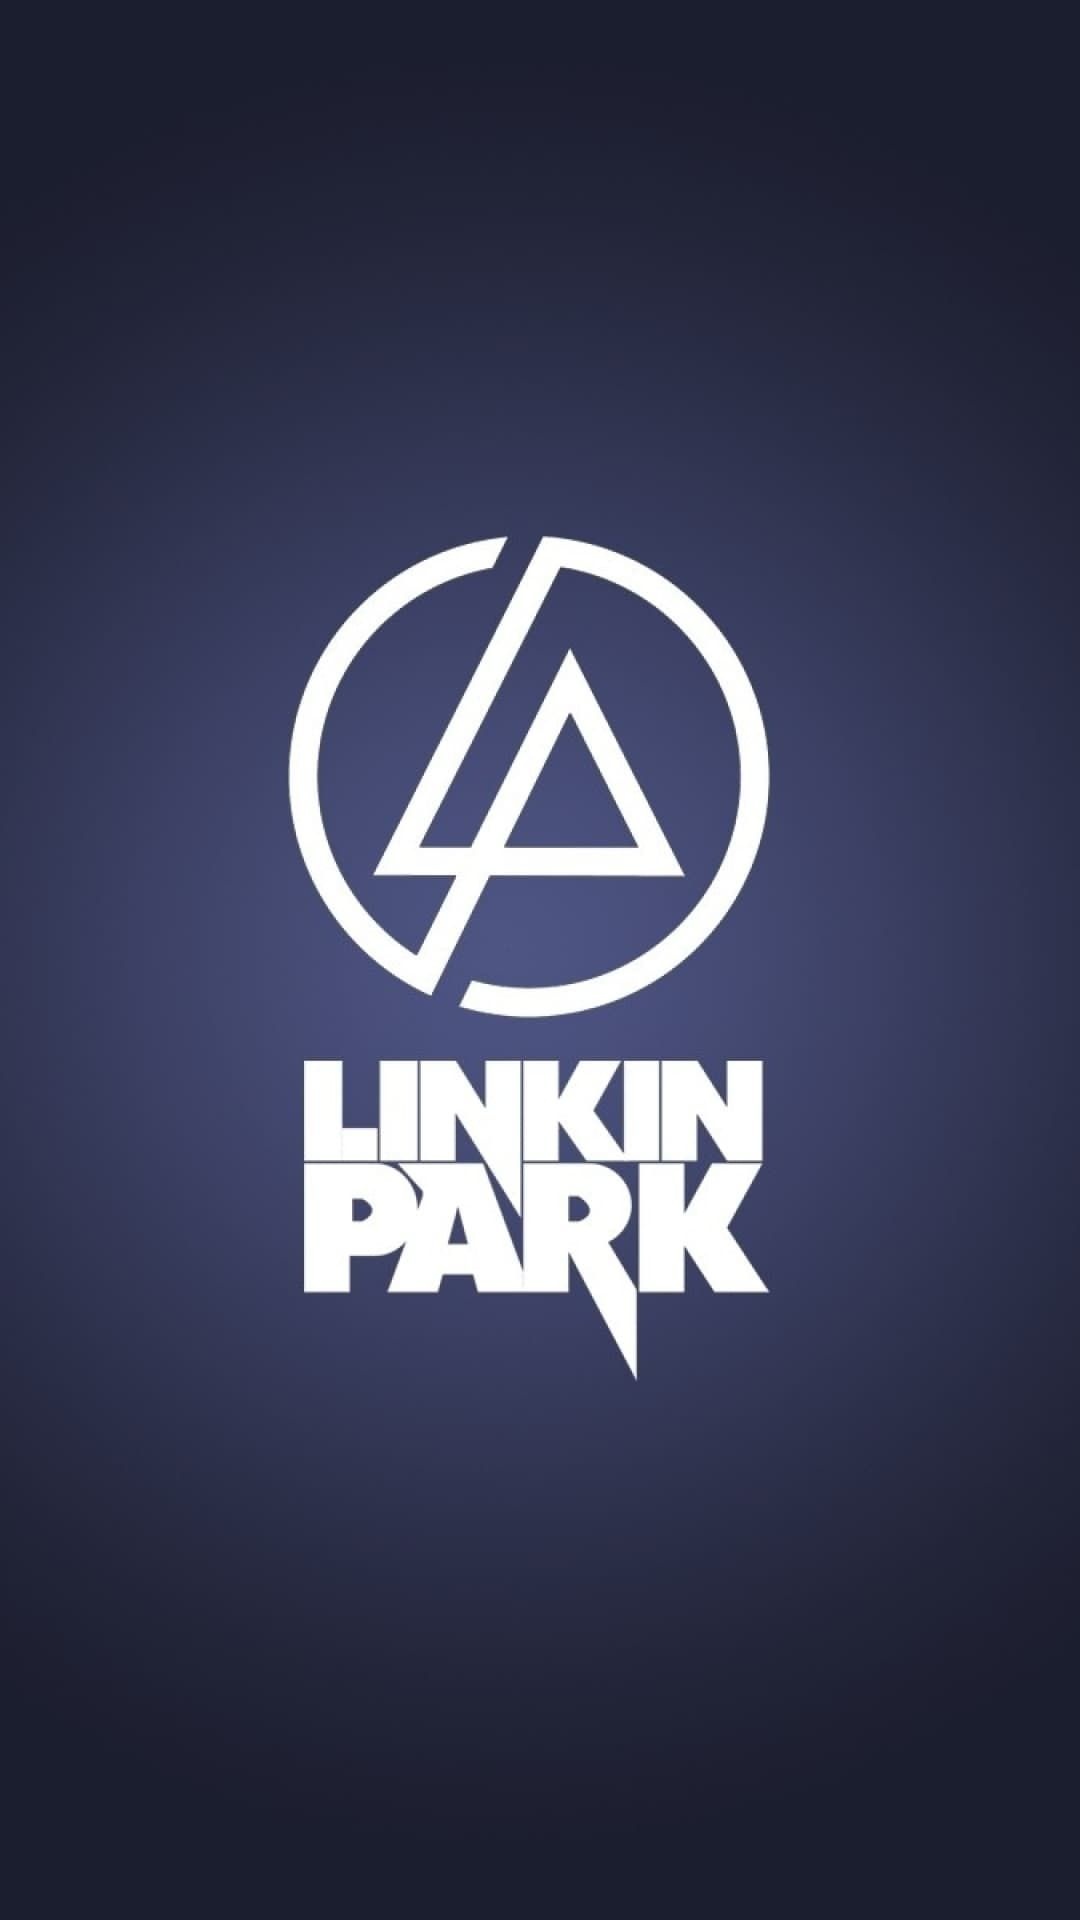 Linkin Park wallpaper, Wallpaper Sun, Abstract design, 1080x1920 Full HD Phone